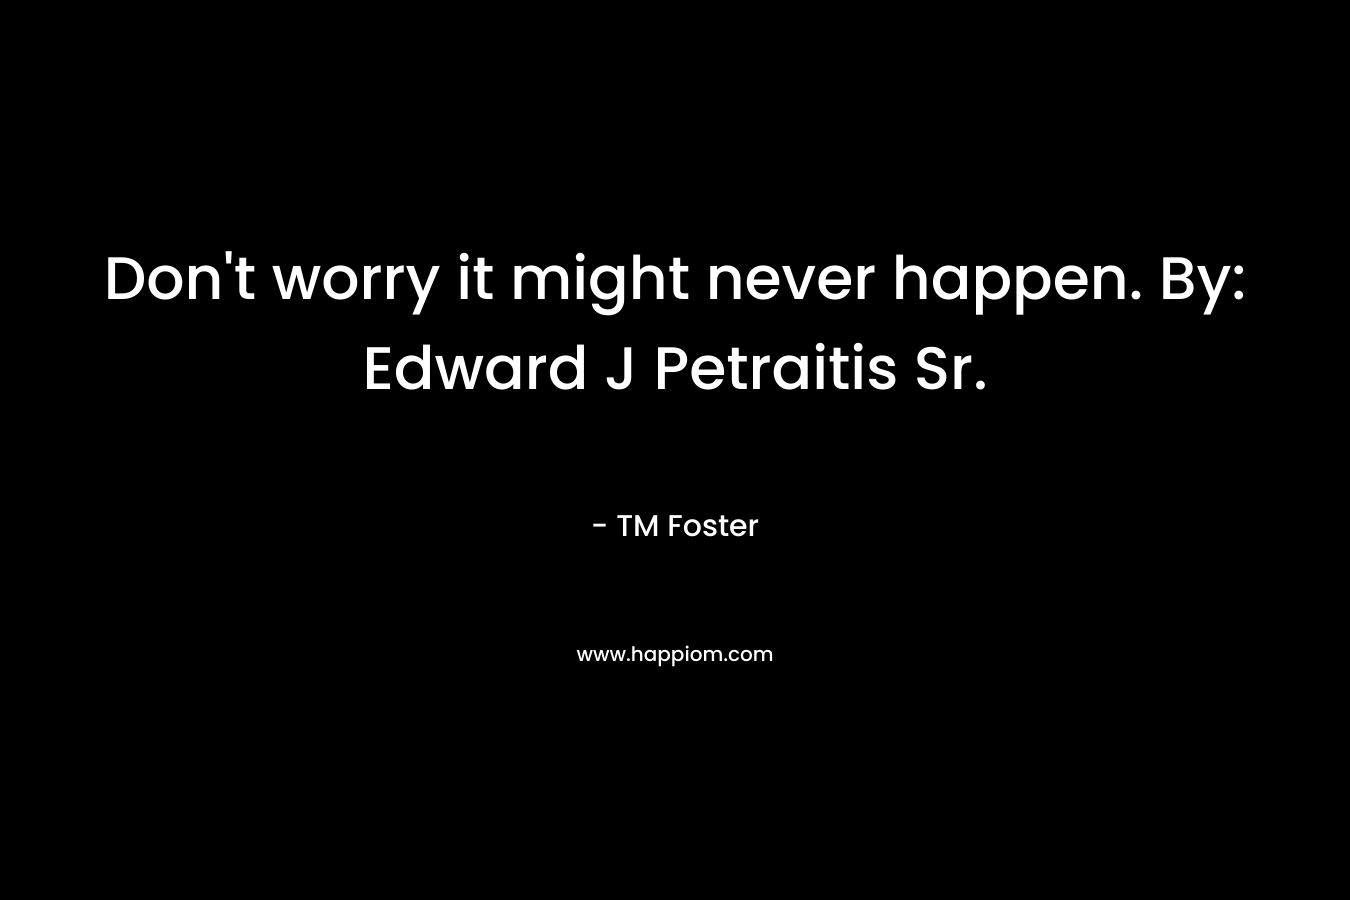 Don't worry it might never happen. By: Edward J Petraitis Sr.